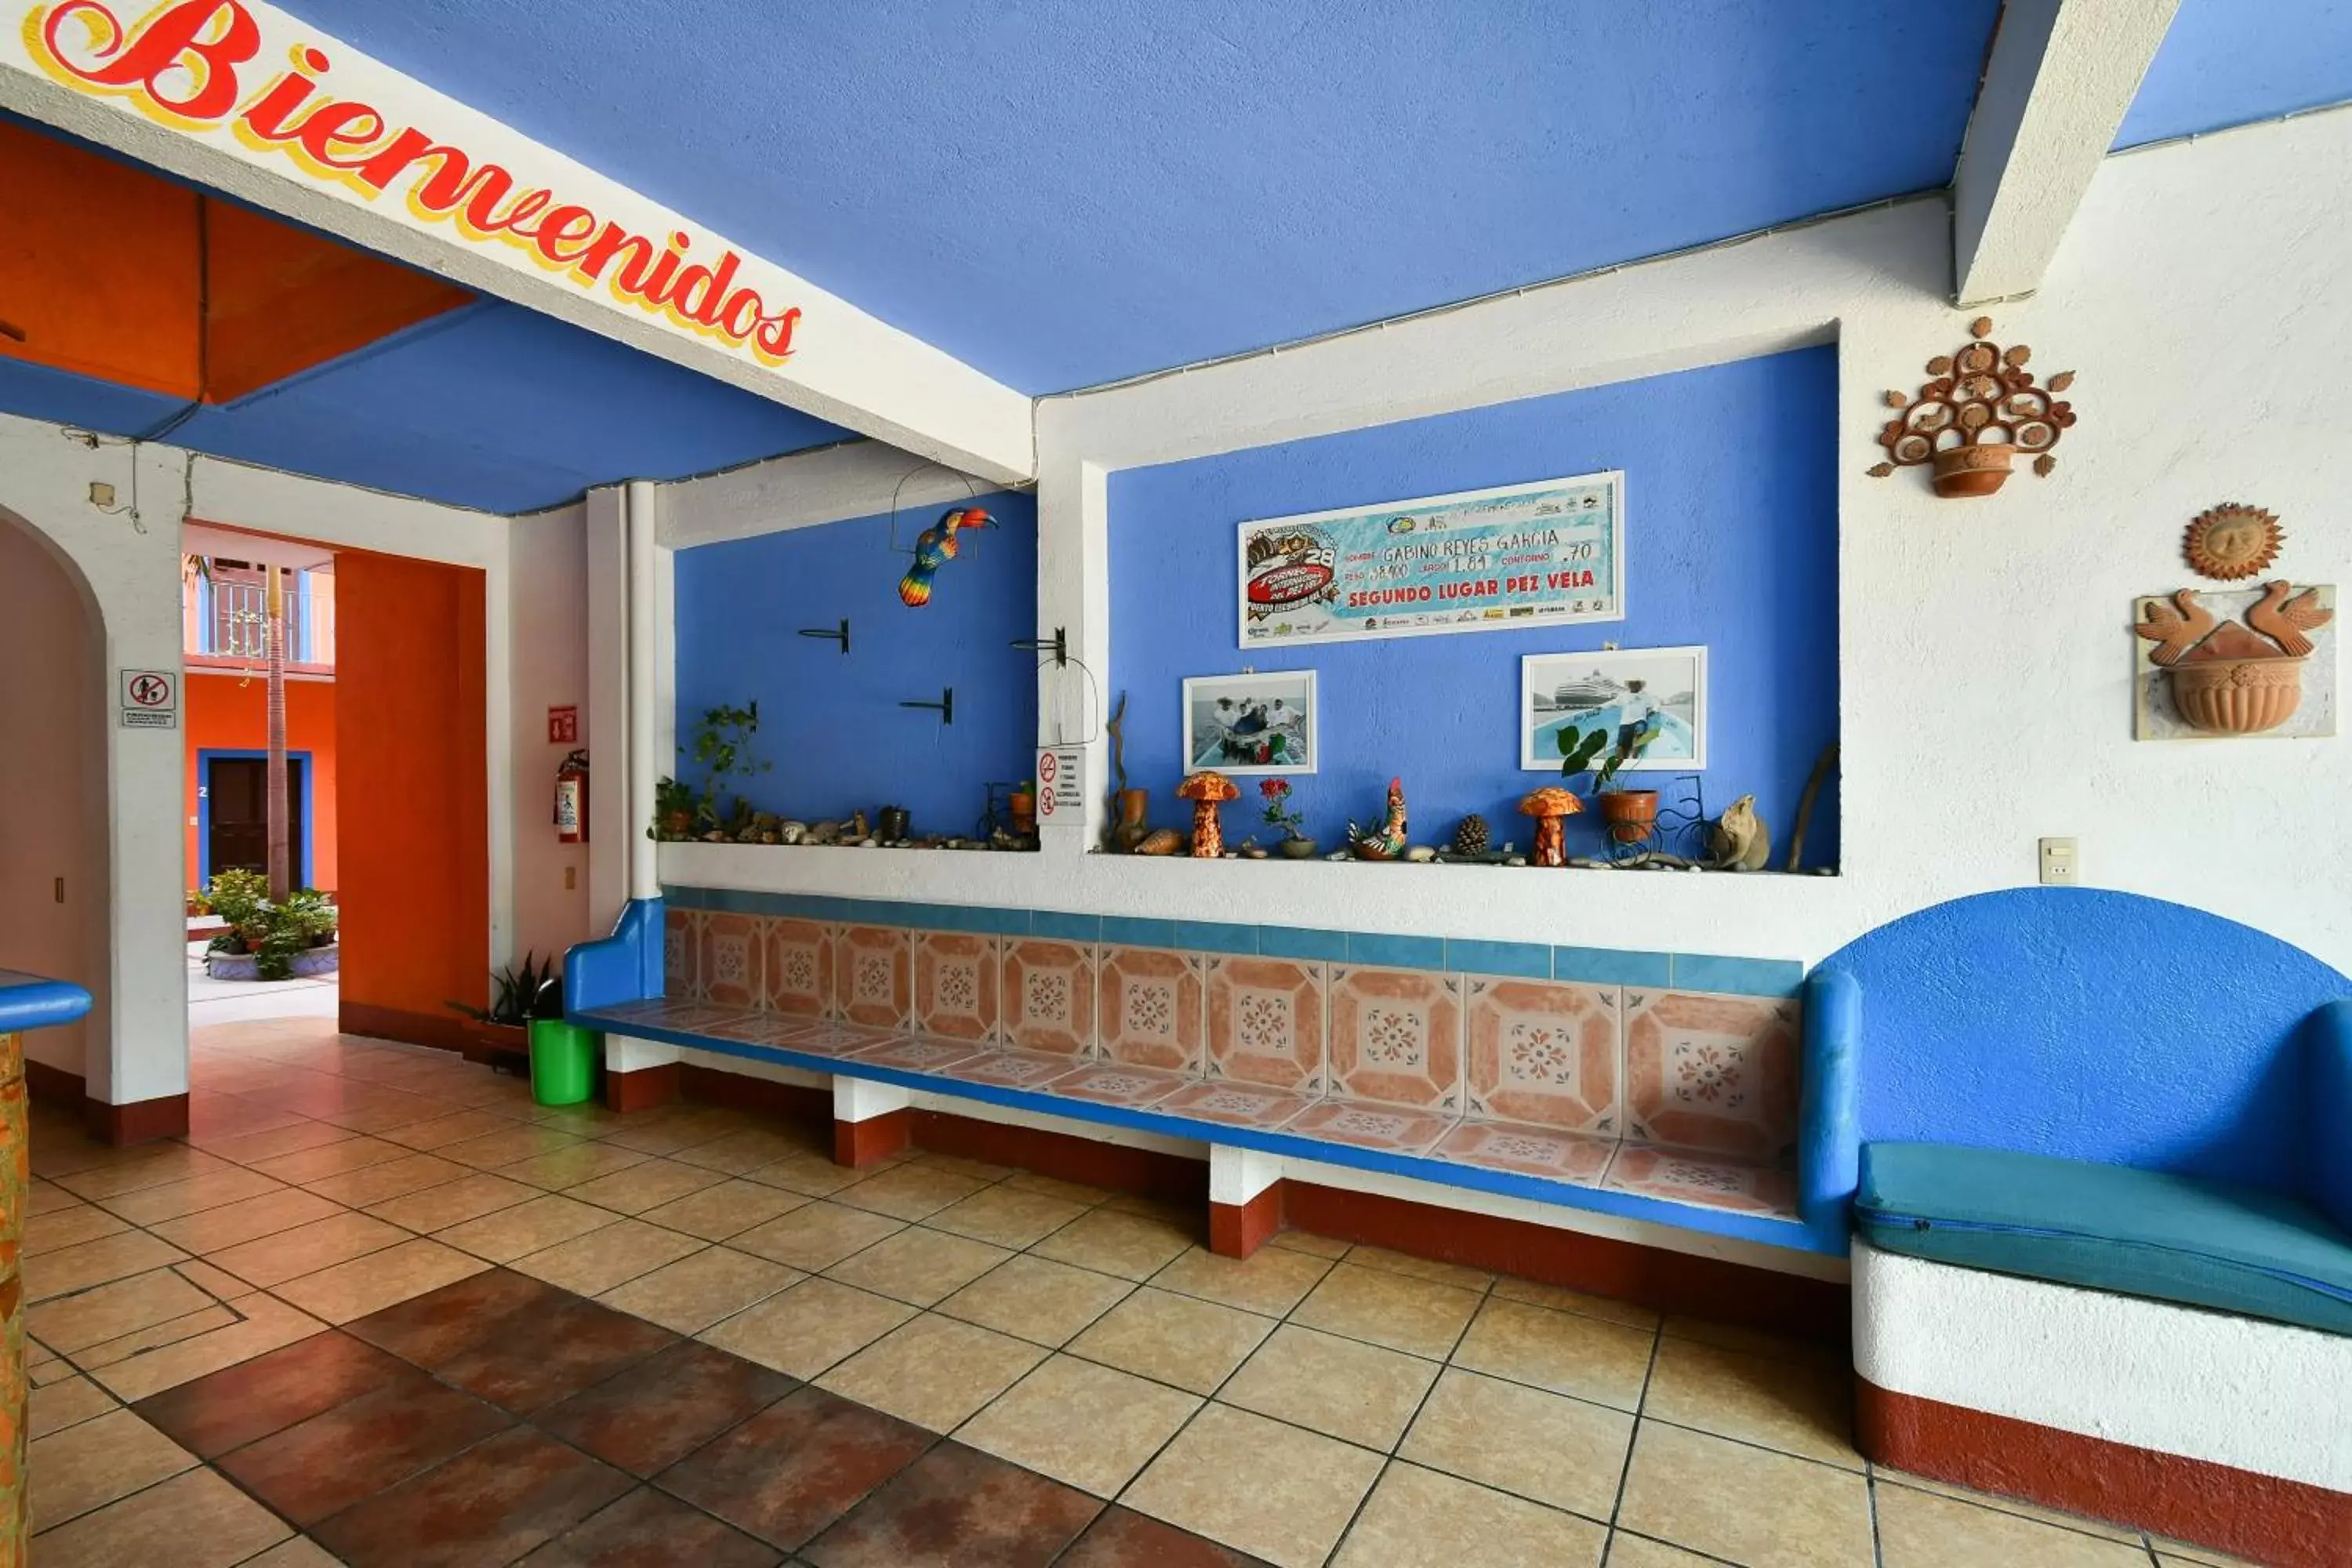 Lobby or reception, Lobby/Reception in Hotel Costamar, Puerto Escondido